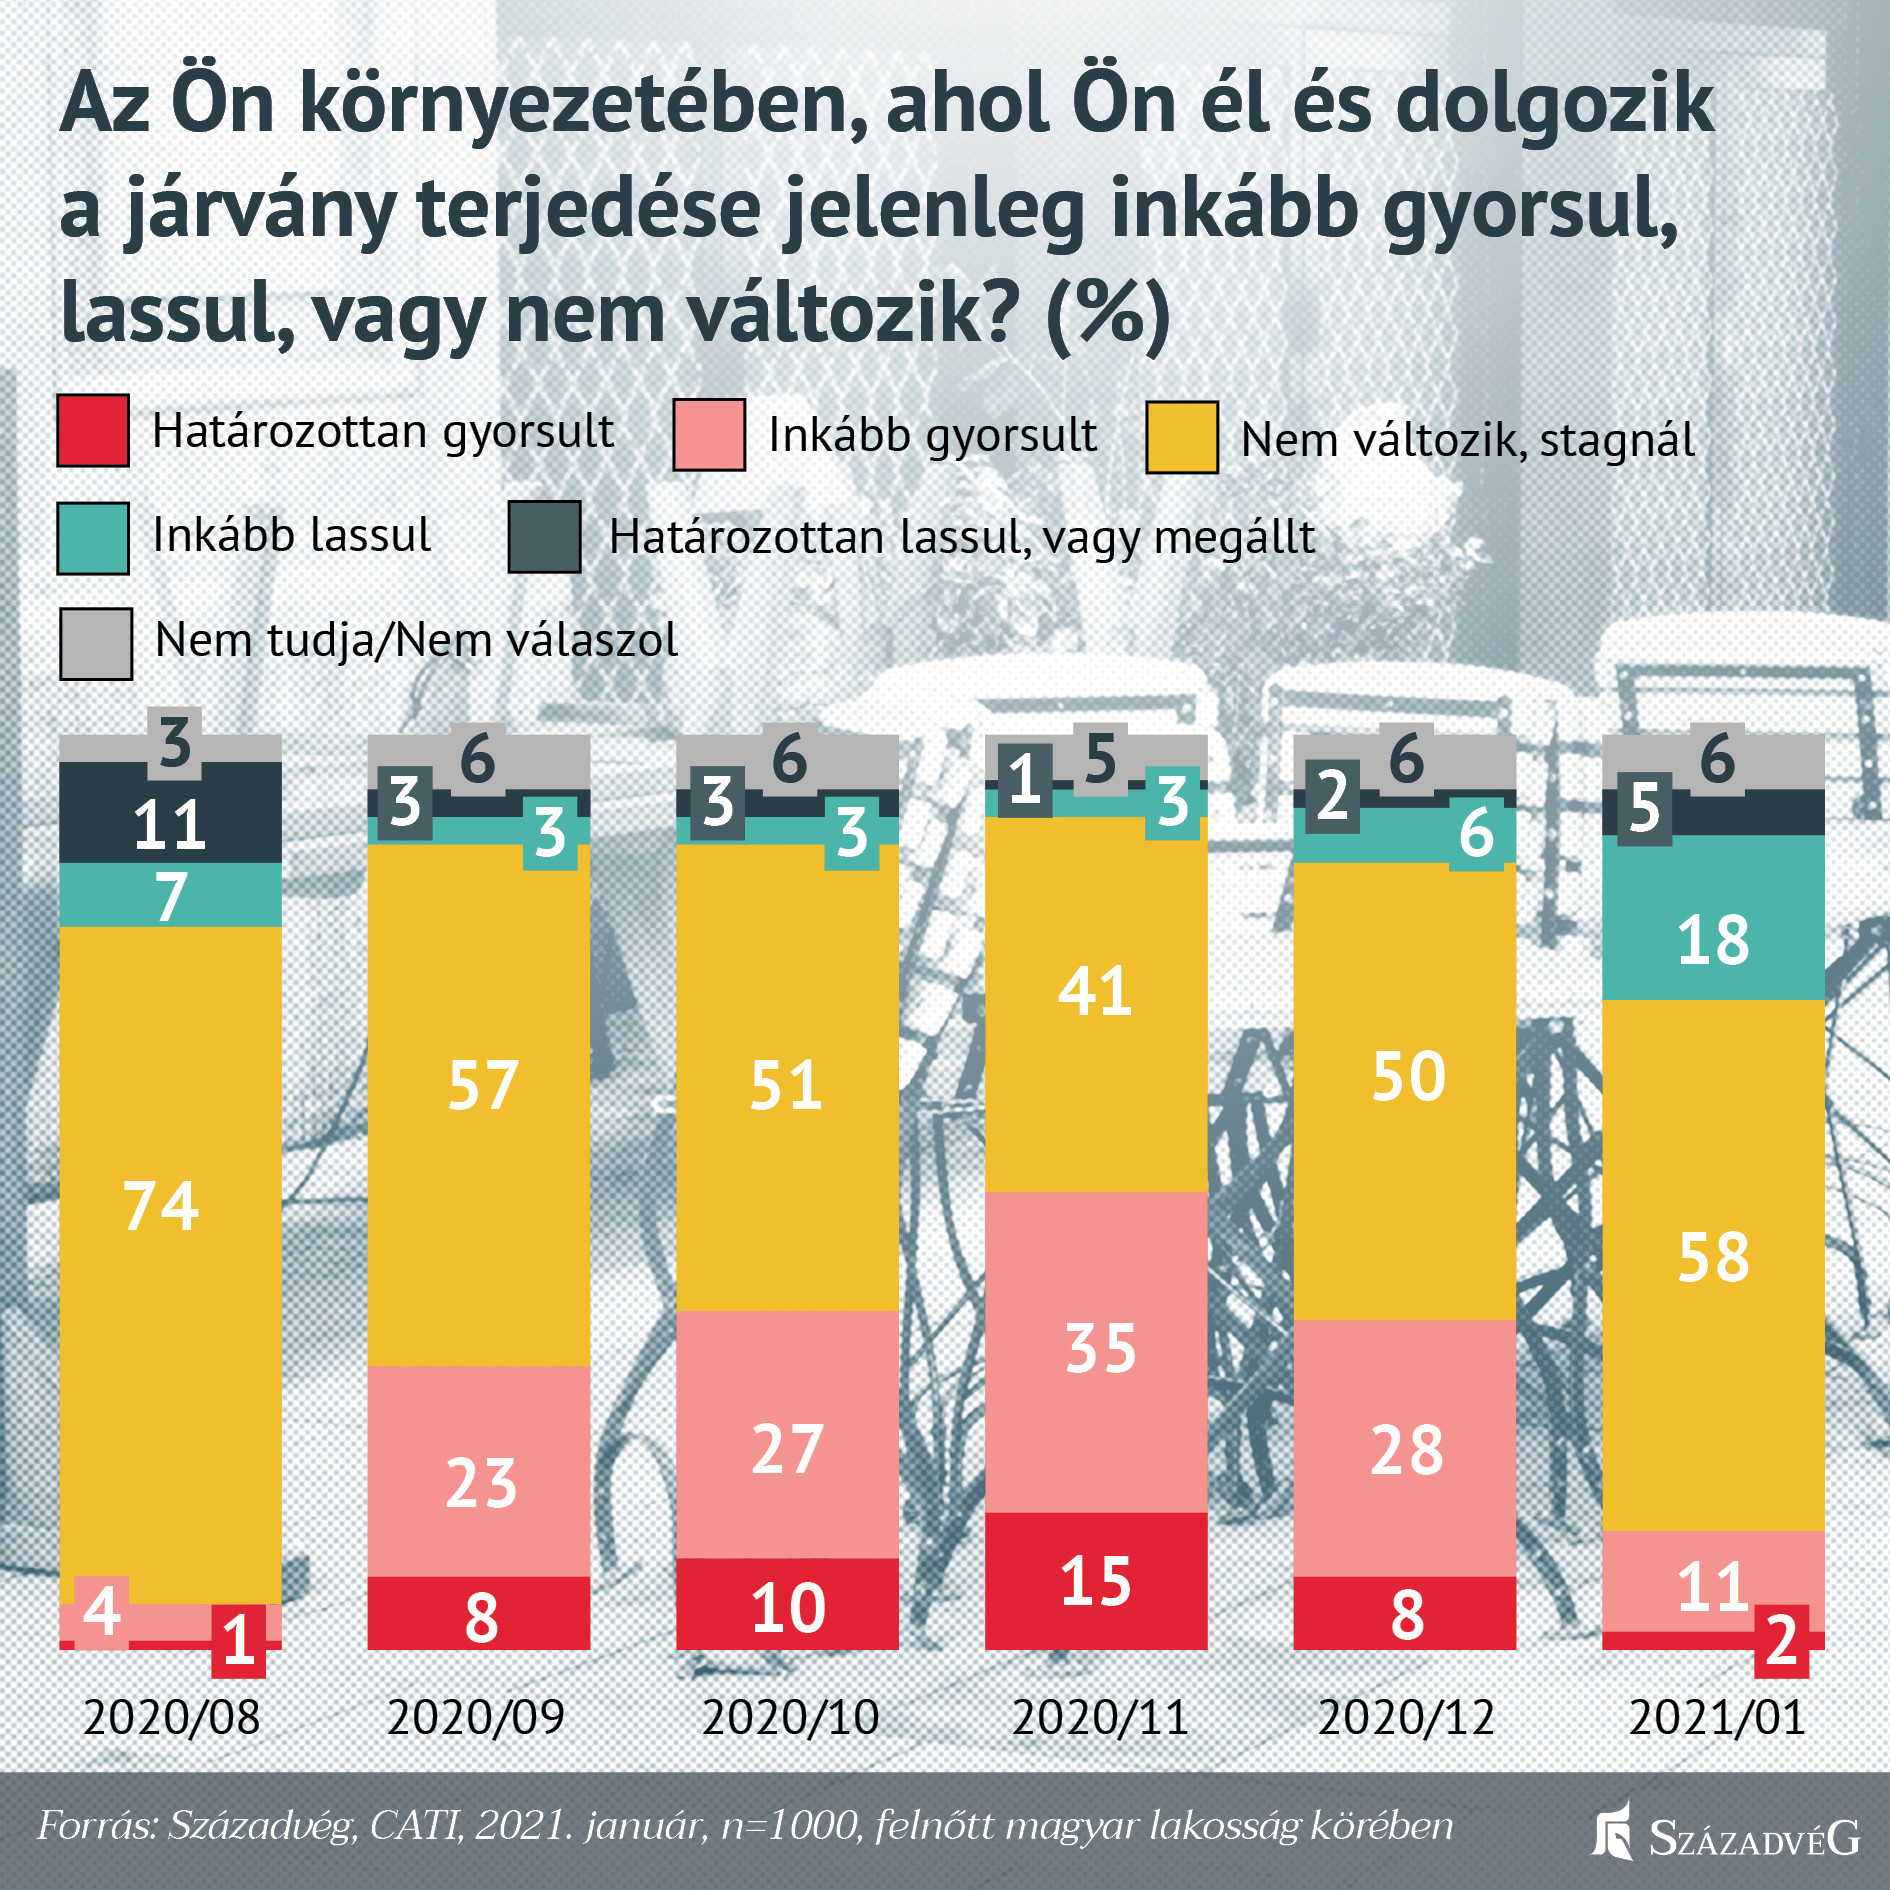 A magyarok többsége reálisan ítéli meg a járvány terjedését